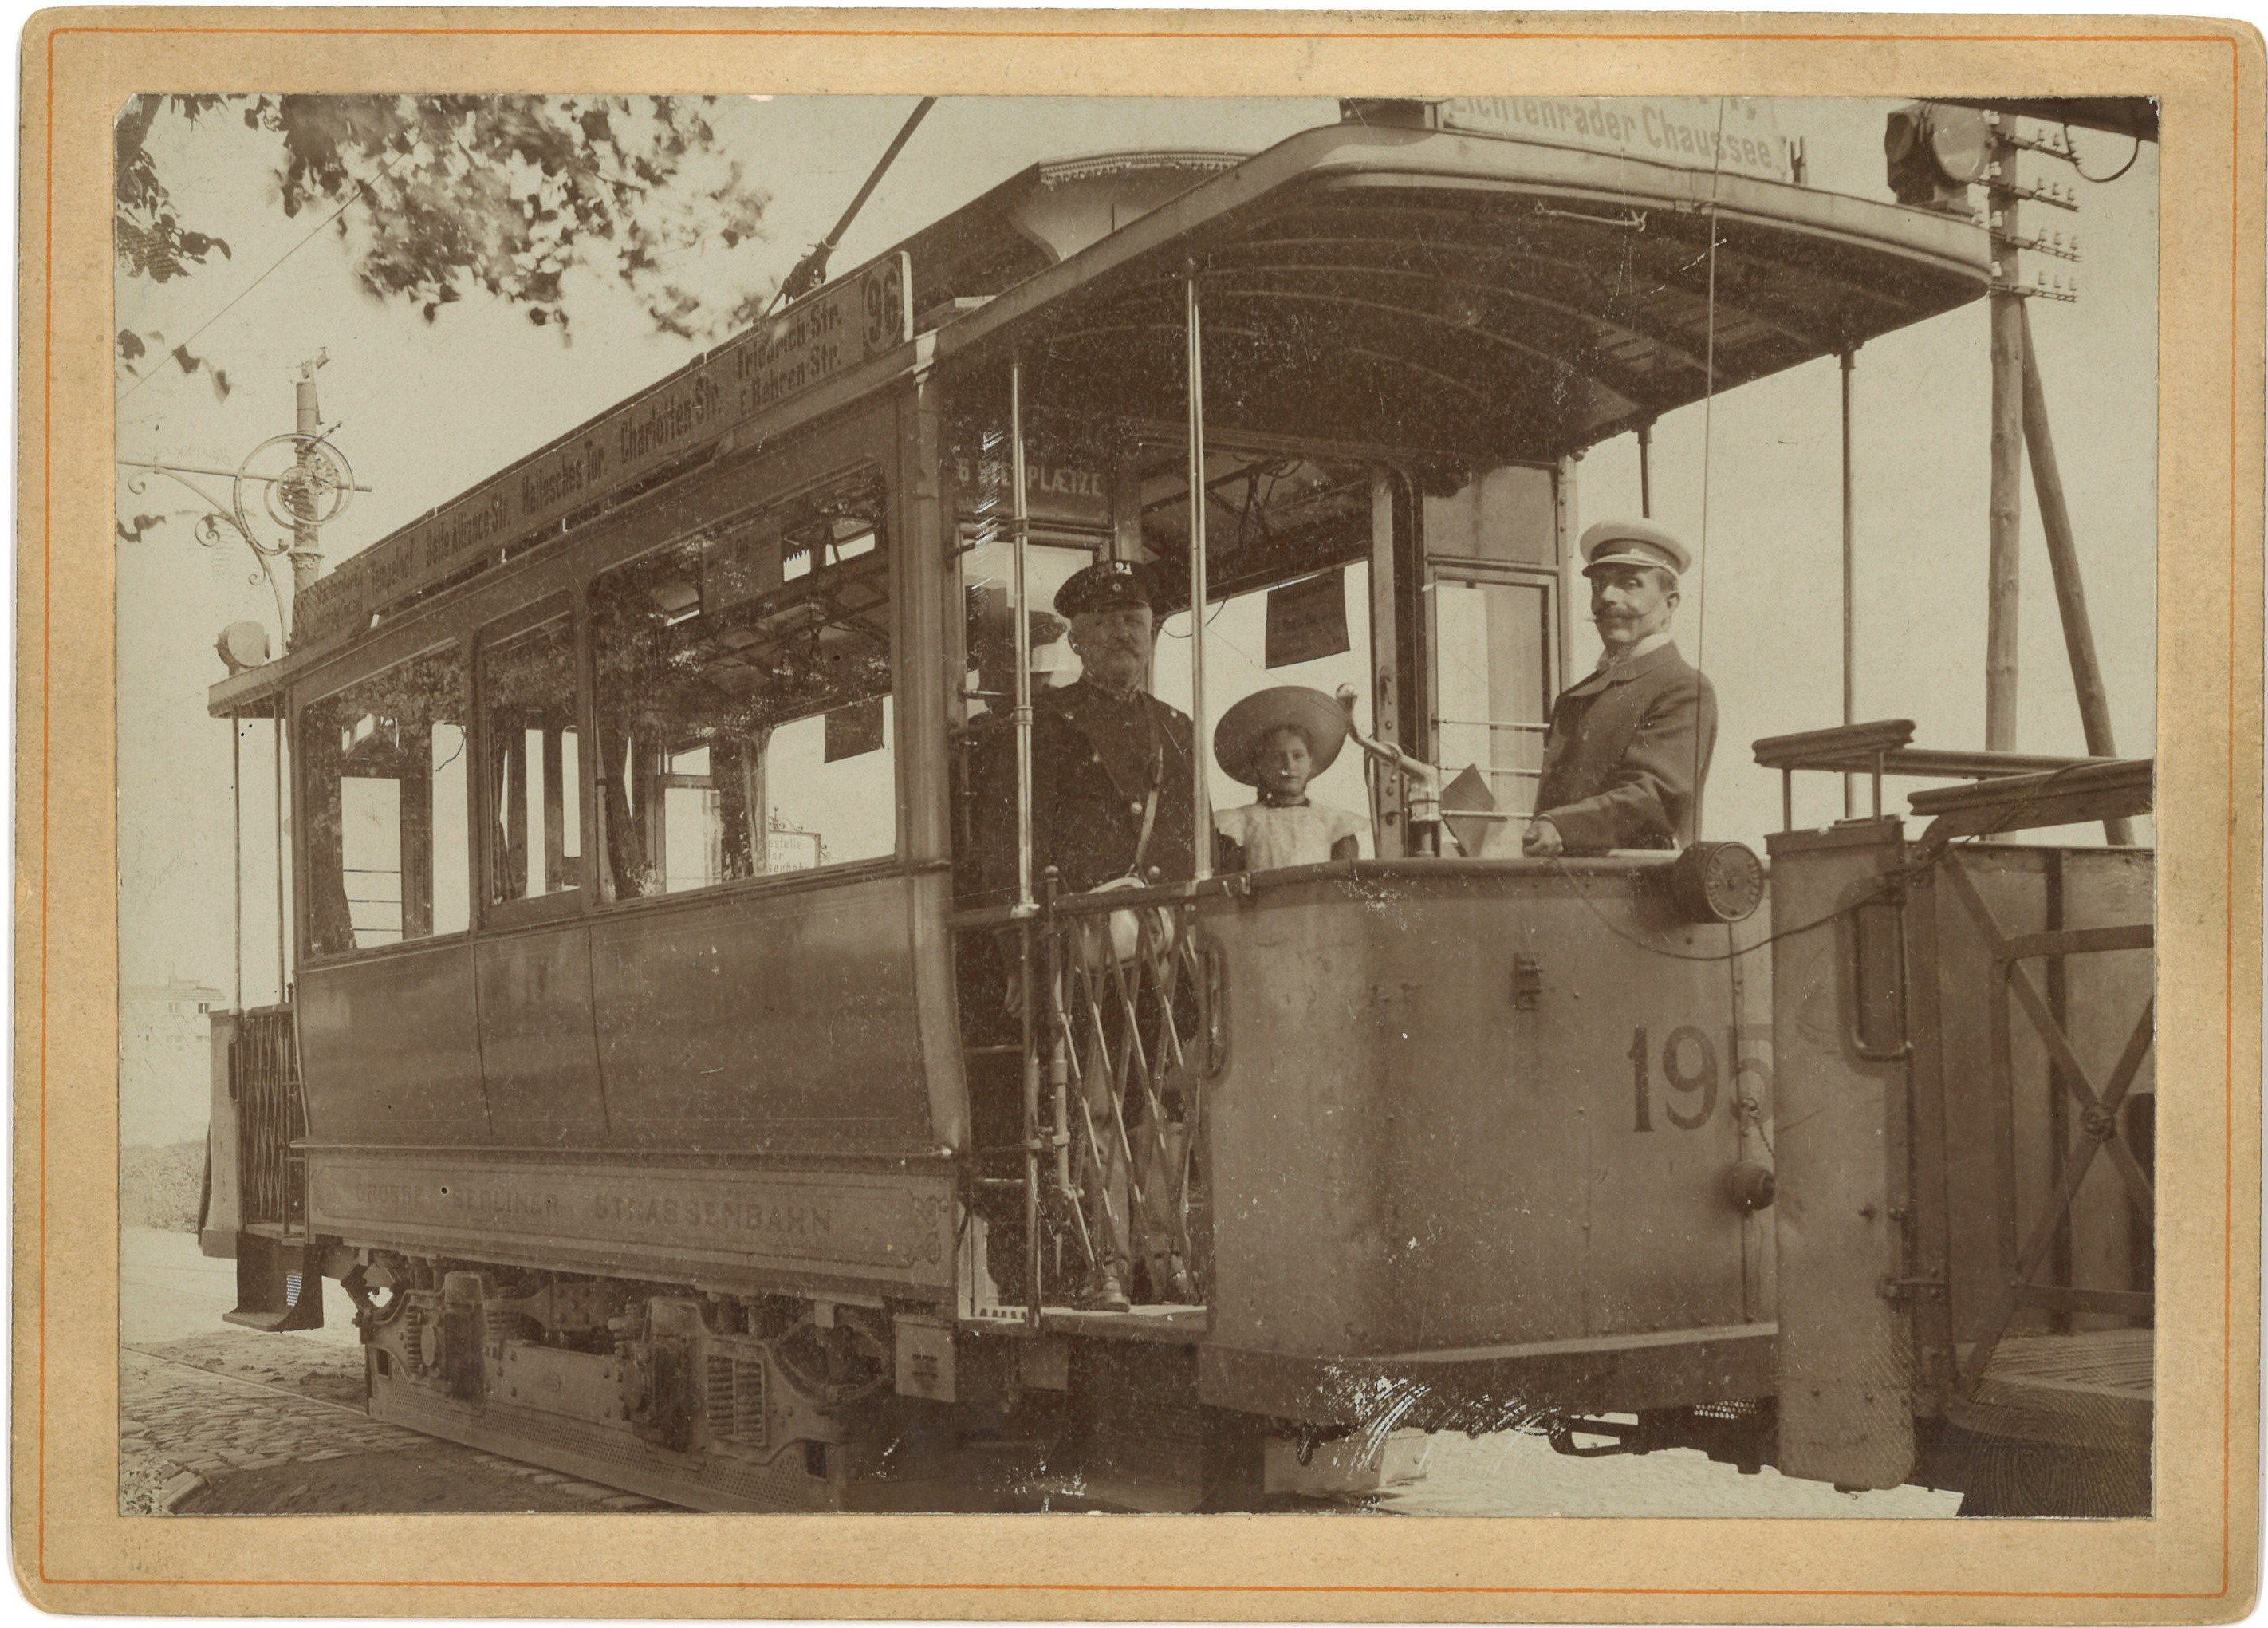 Berlin: Wagen der Großen Berliner Straßenbahn um 1900 (Landesgeschichtliche Vereinigung für die Mark Brandenburg e.V., Archiv CC BY)